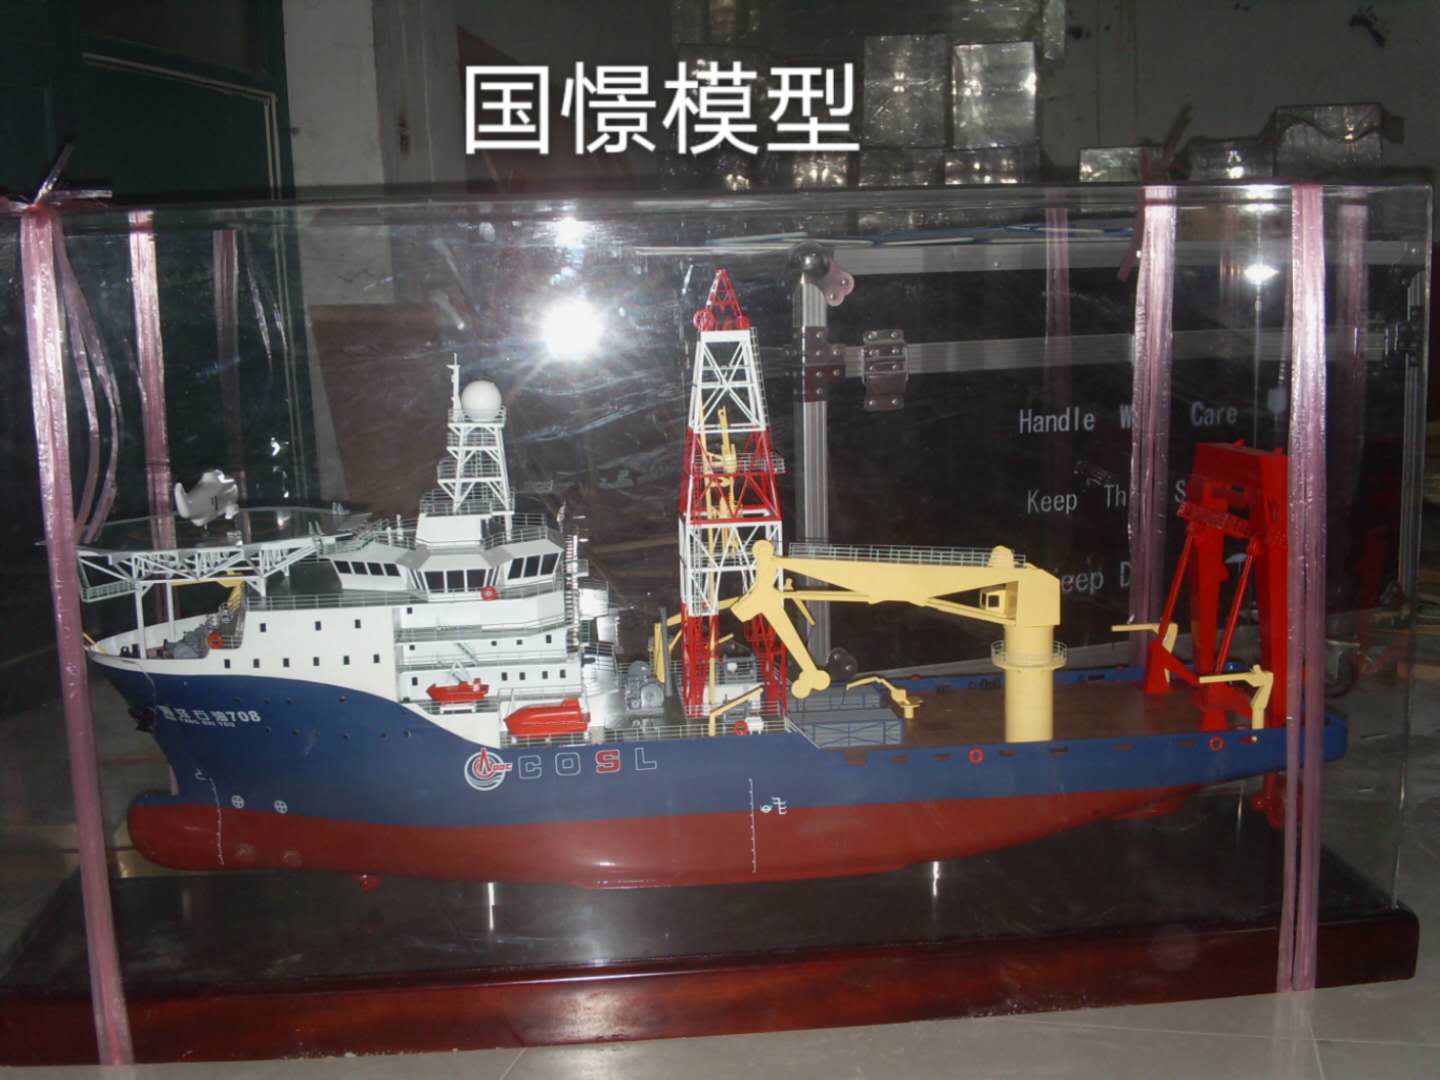 岚皋县船舶模型